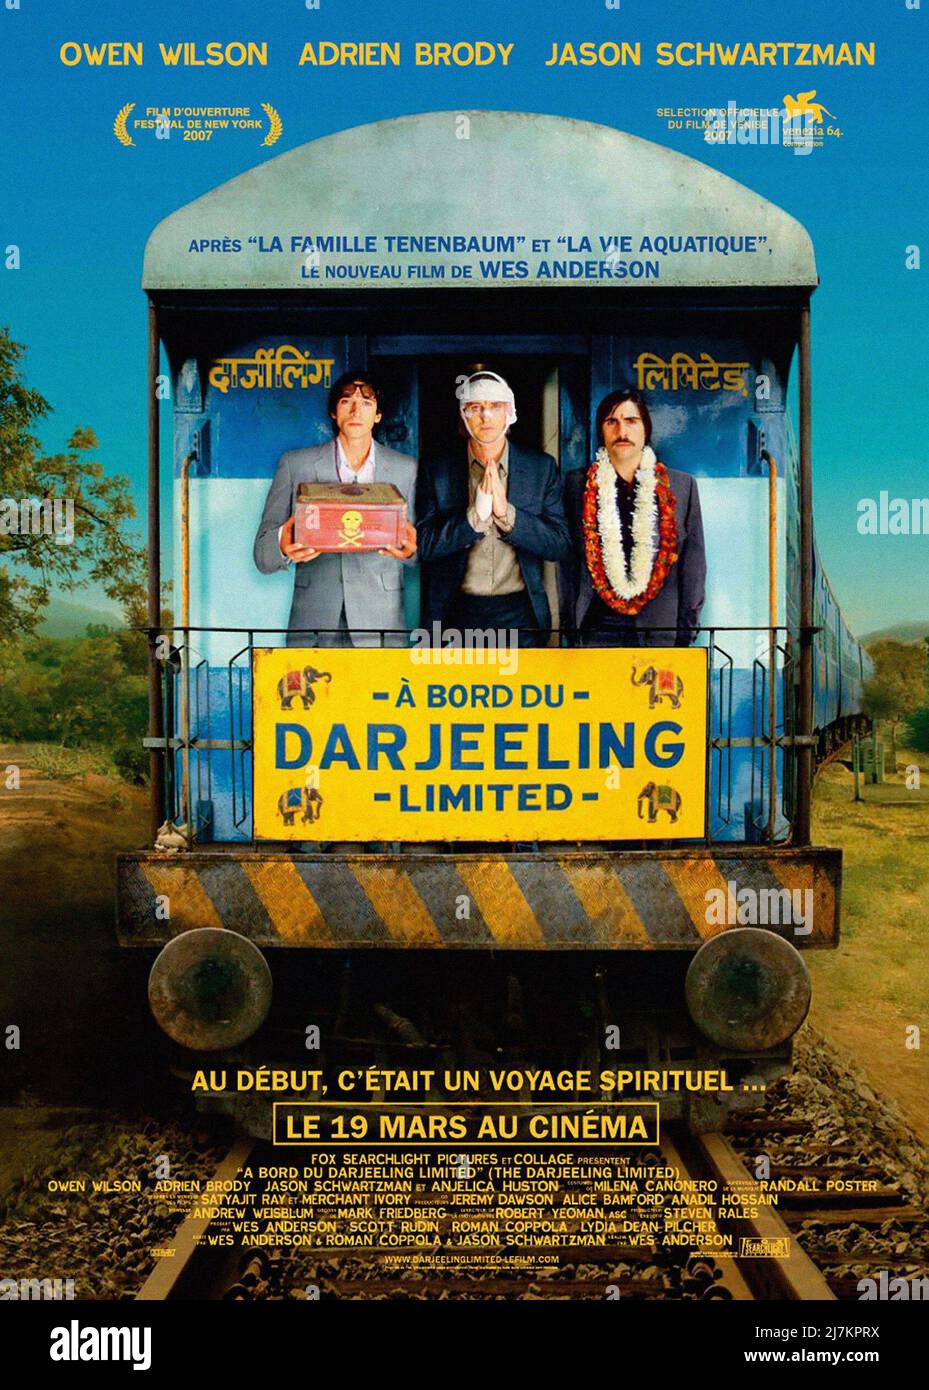 The Darjeeling Limited- Wes Anderson – Sandgrain Studio